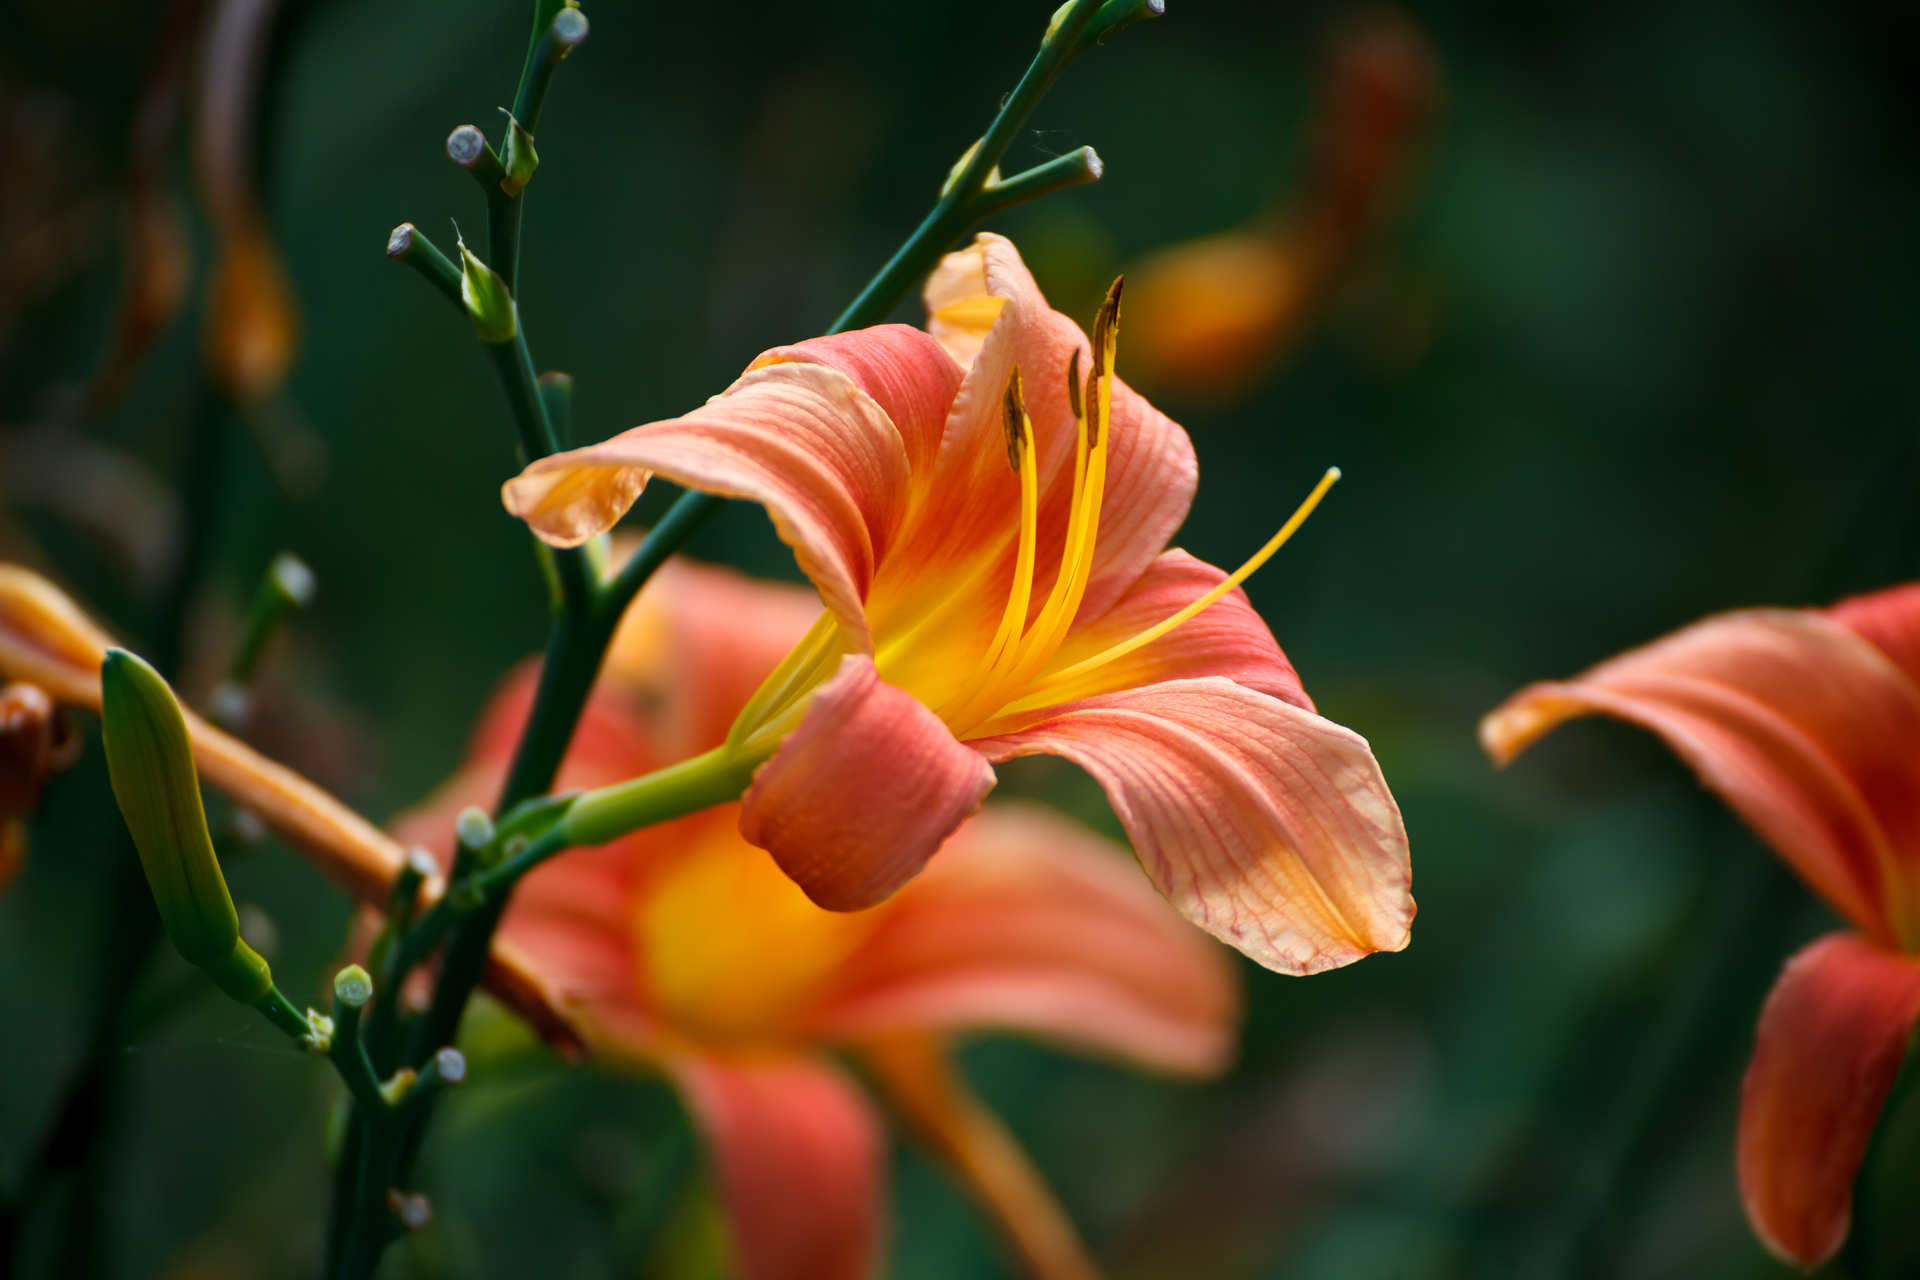 Ten obrazek przedstawia wyrazistą pomarańczową lilie, która emanuje energią i pasją. Jej intensywny kolor przyciąga uwagę i dodaje otoczeniu ciepła. Kwiaty o płatkach rozpostartych w eleganckim układzie tworzą wspaniały kontrast z zielonymi liśćmi, tworząc niezwykłą kompozycję natury